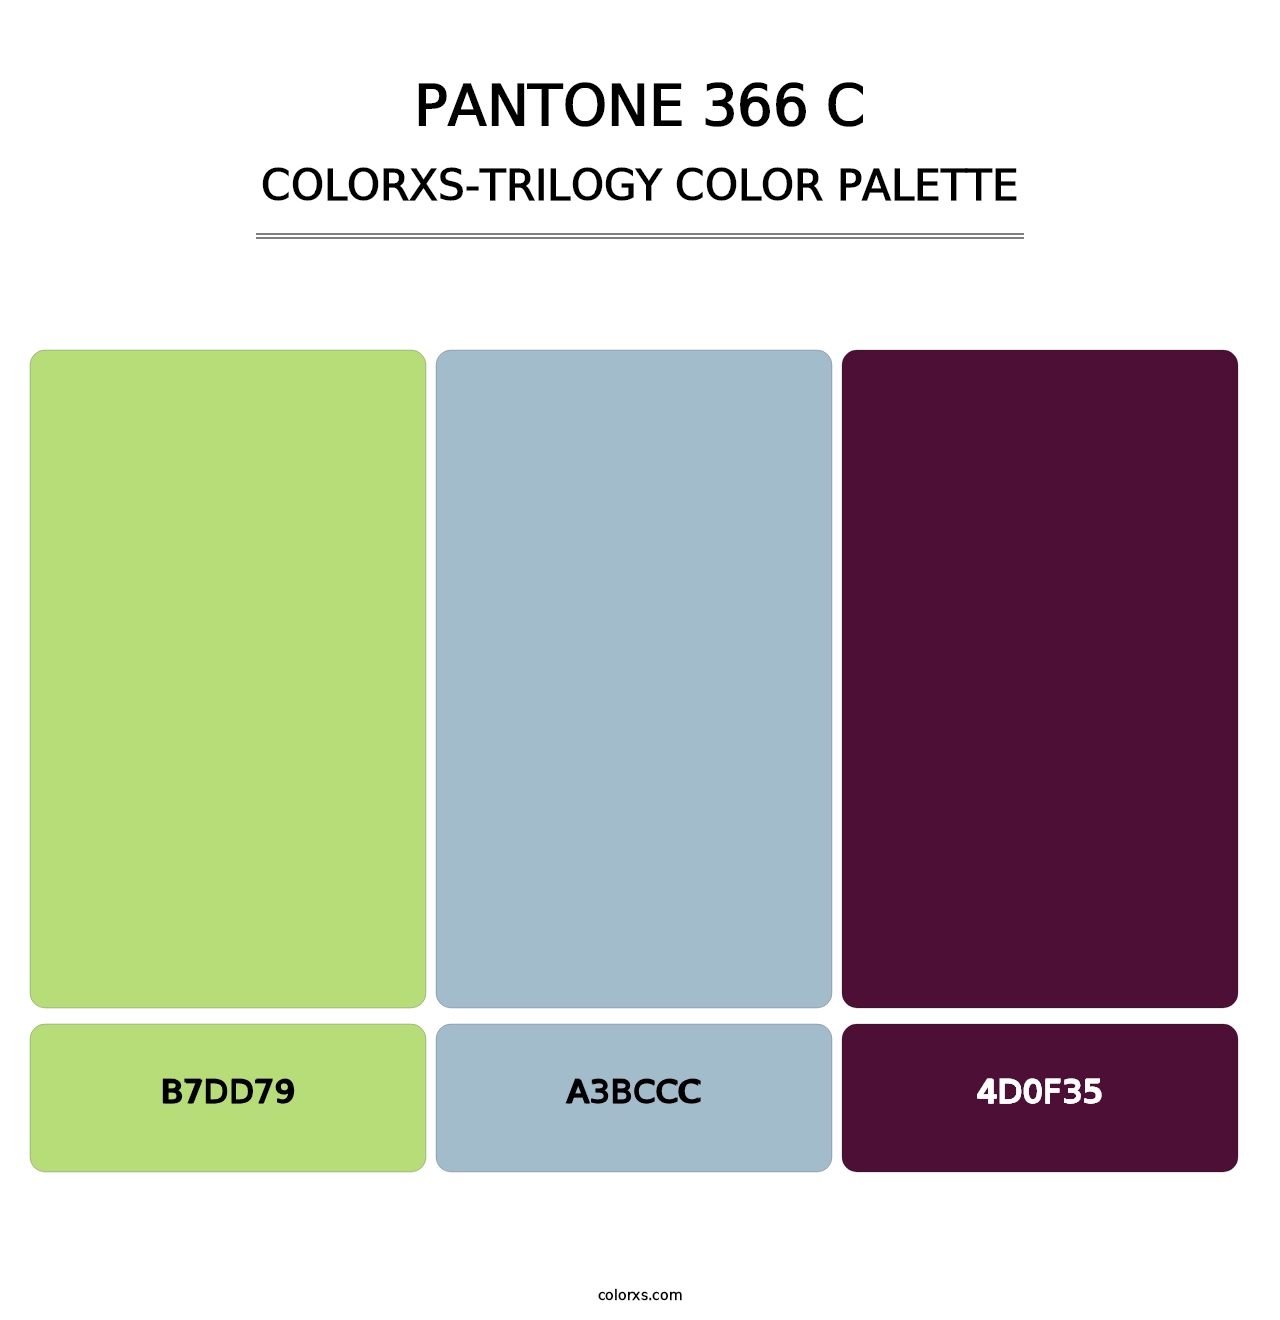 PANTONE 366 C - Colorxs Trilogy Palette